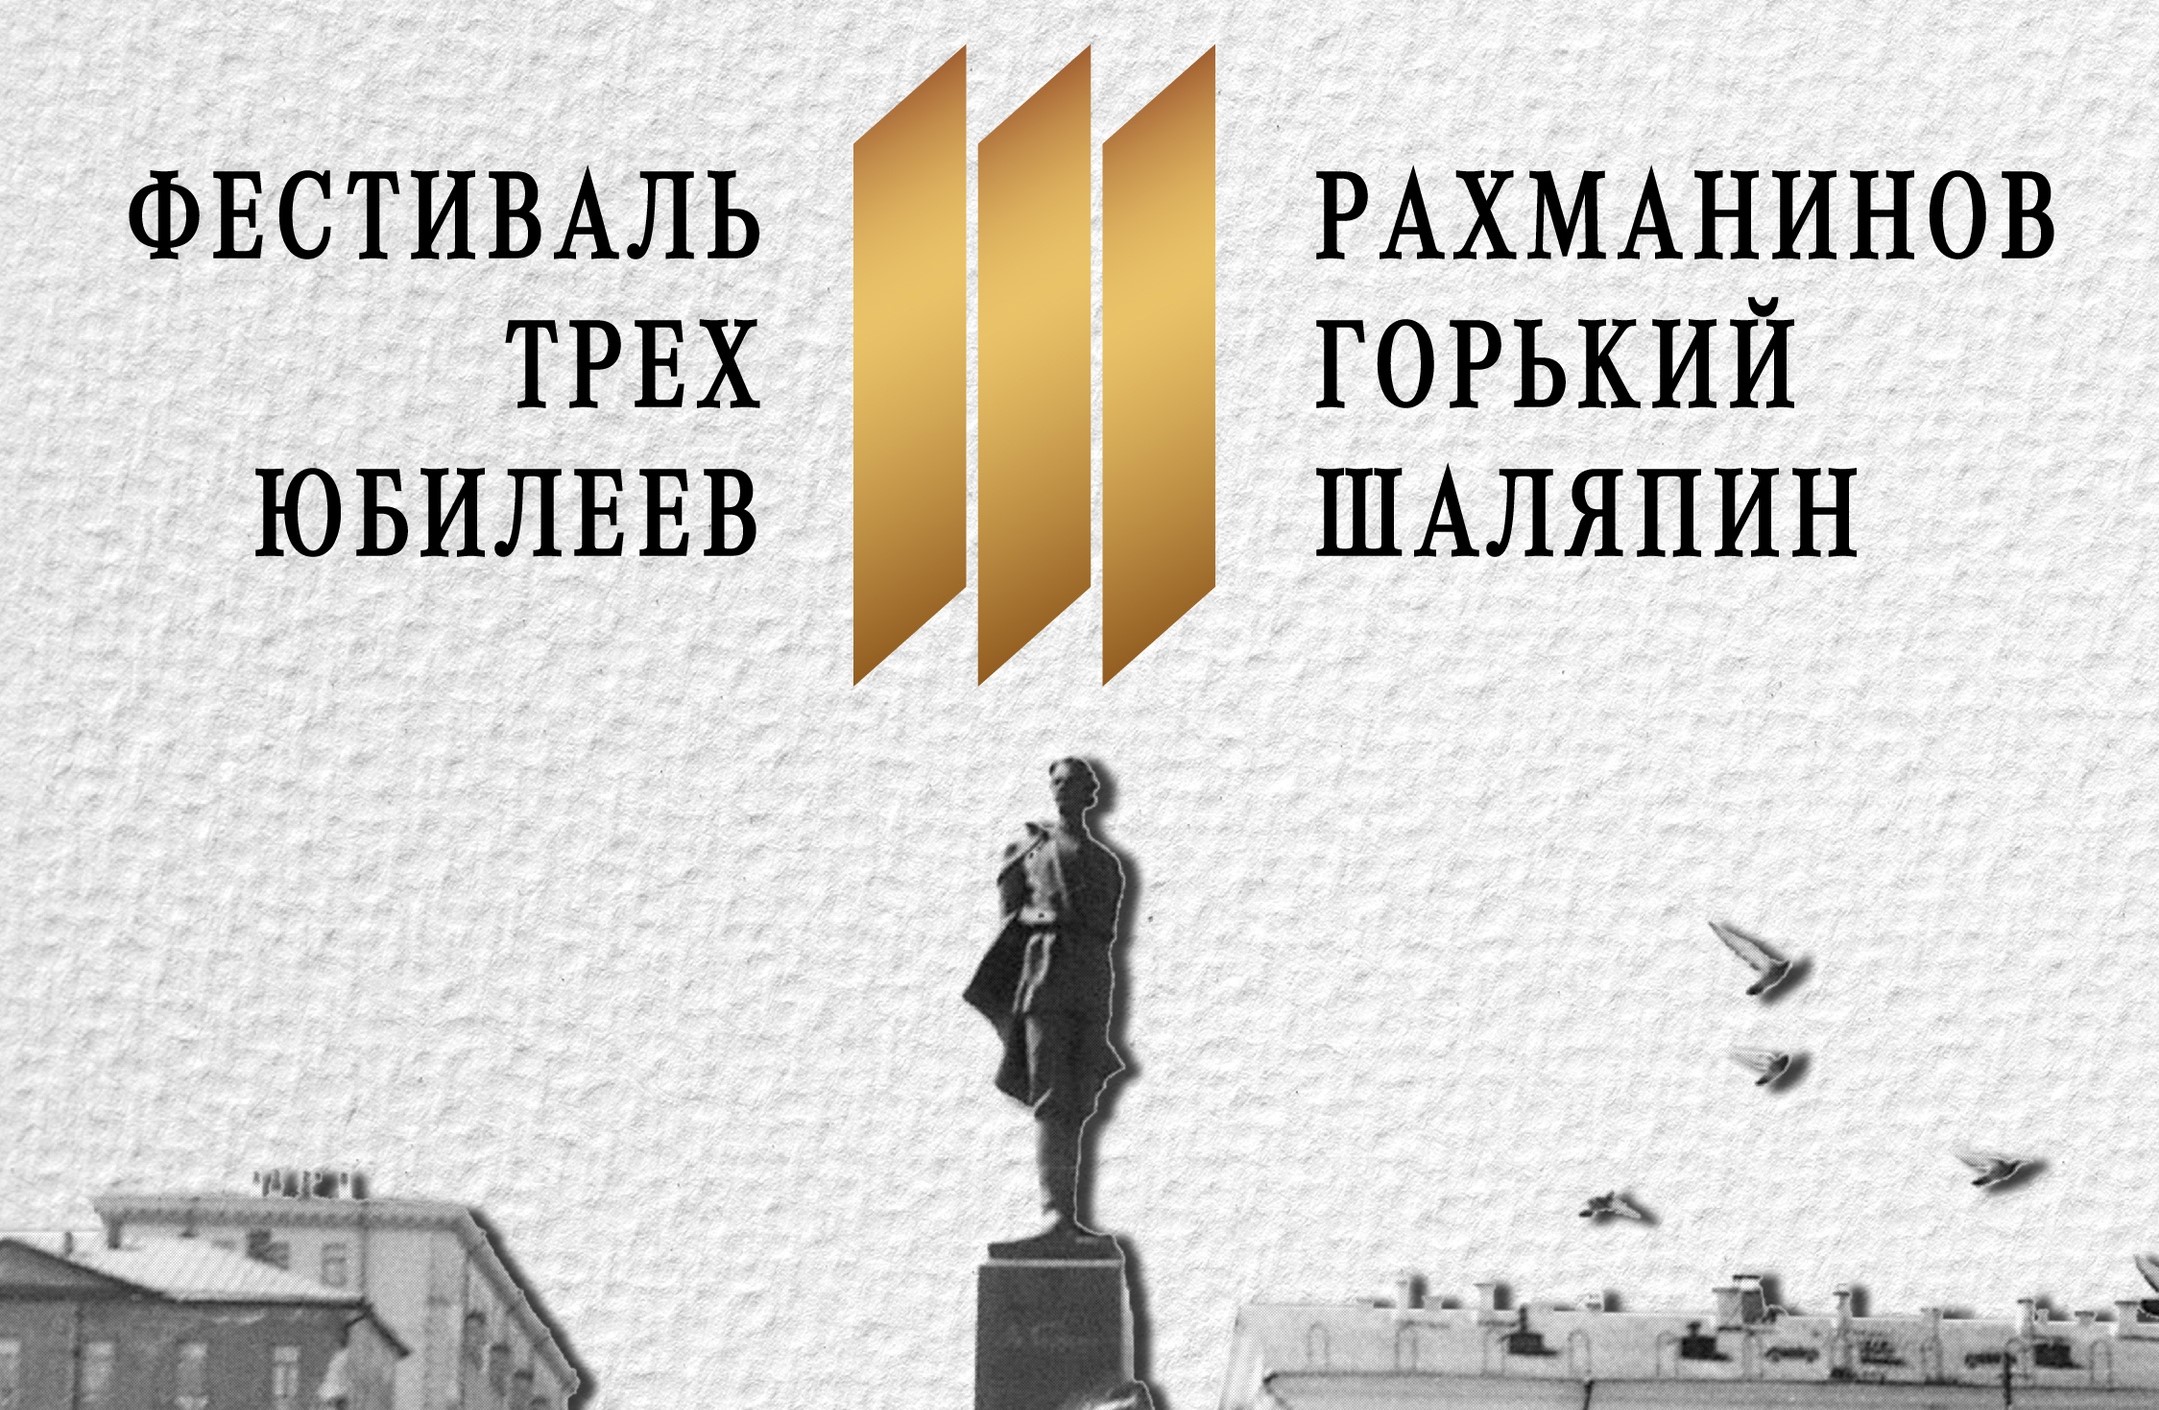 Юбилеи Рахманинова, Шаляпина и Горького отметят большим фестивалем в Нижнем Новгороде с 27 по 31 мая